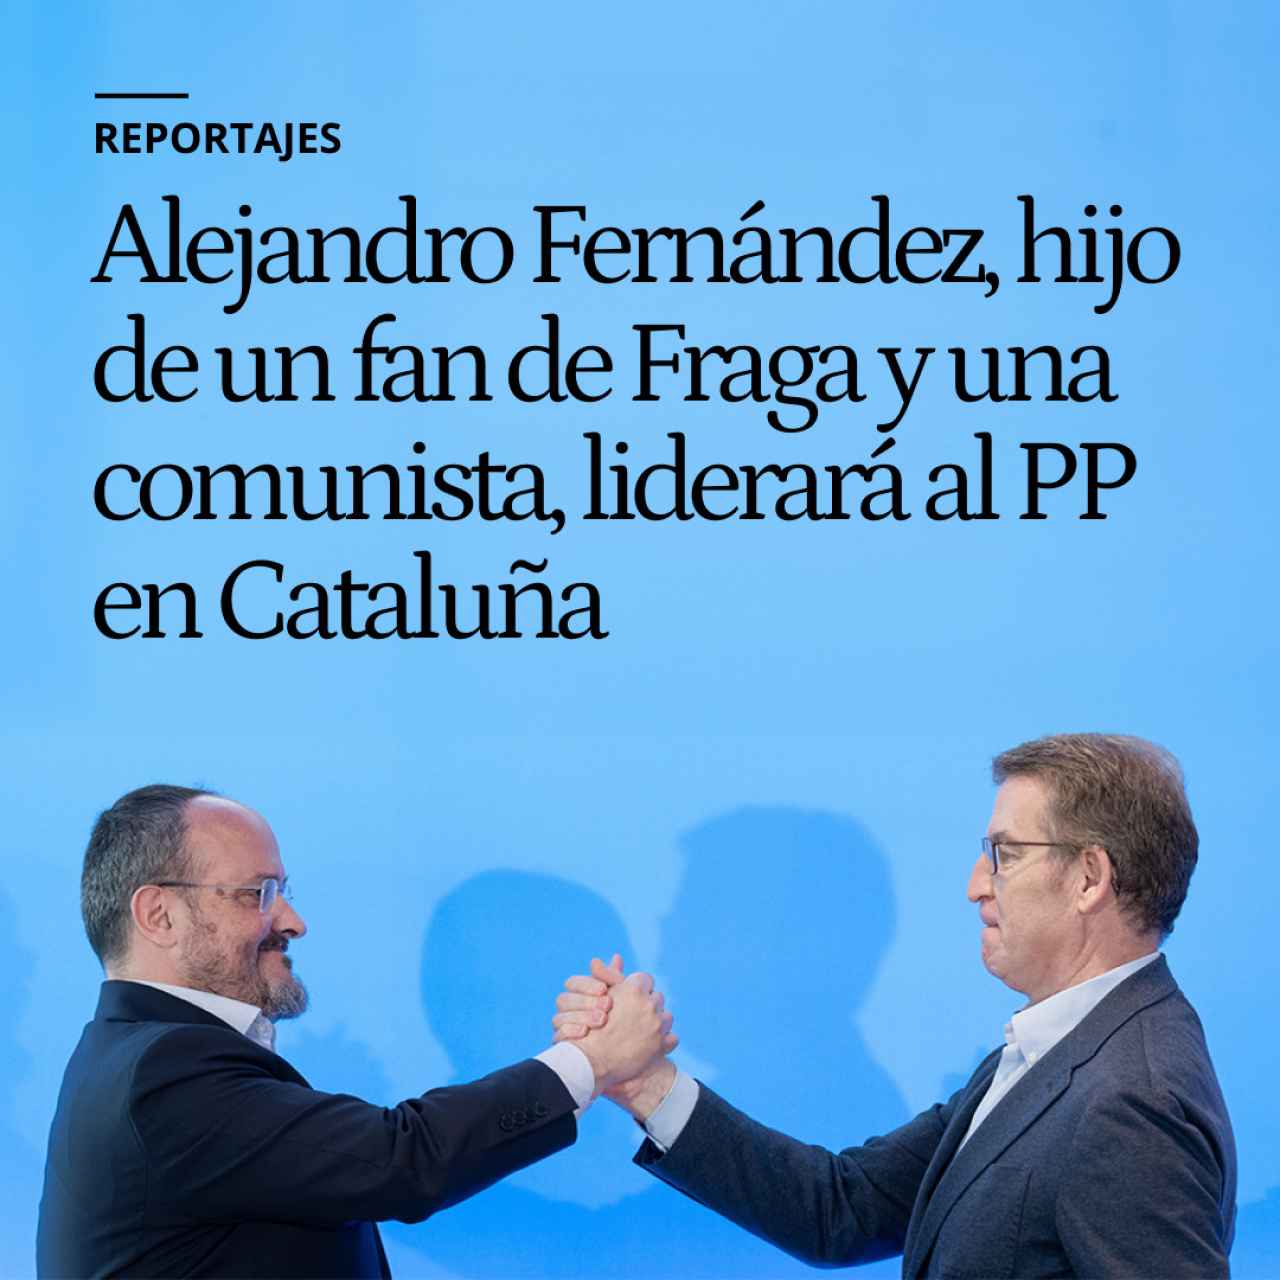 Alejandro Fernández, el ajedrecista hijo de un fan de Fraga y una comunista, liderará al PP en Cataluña